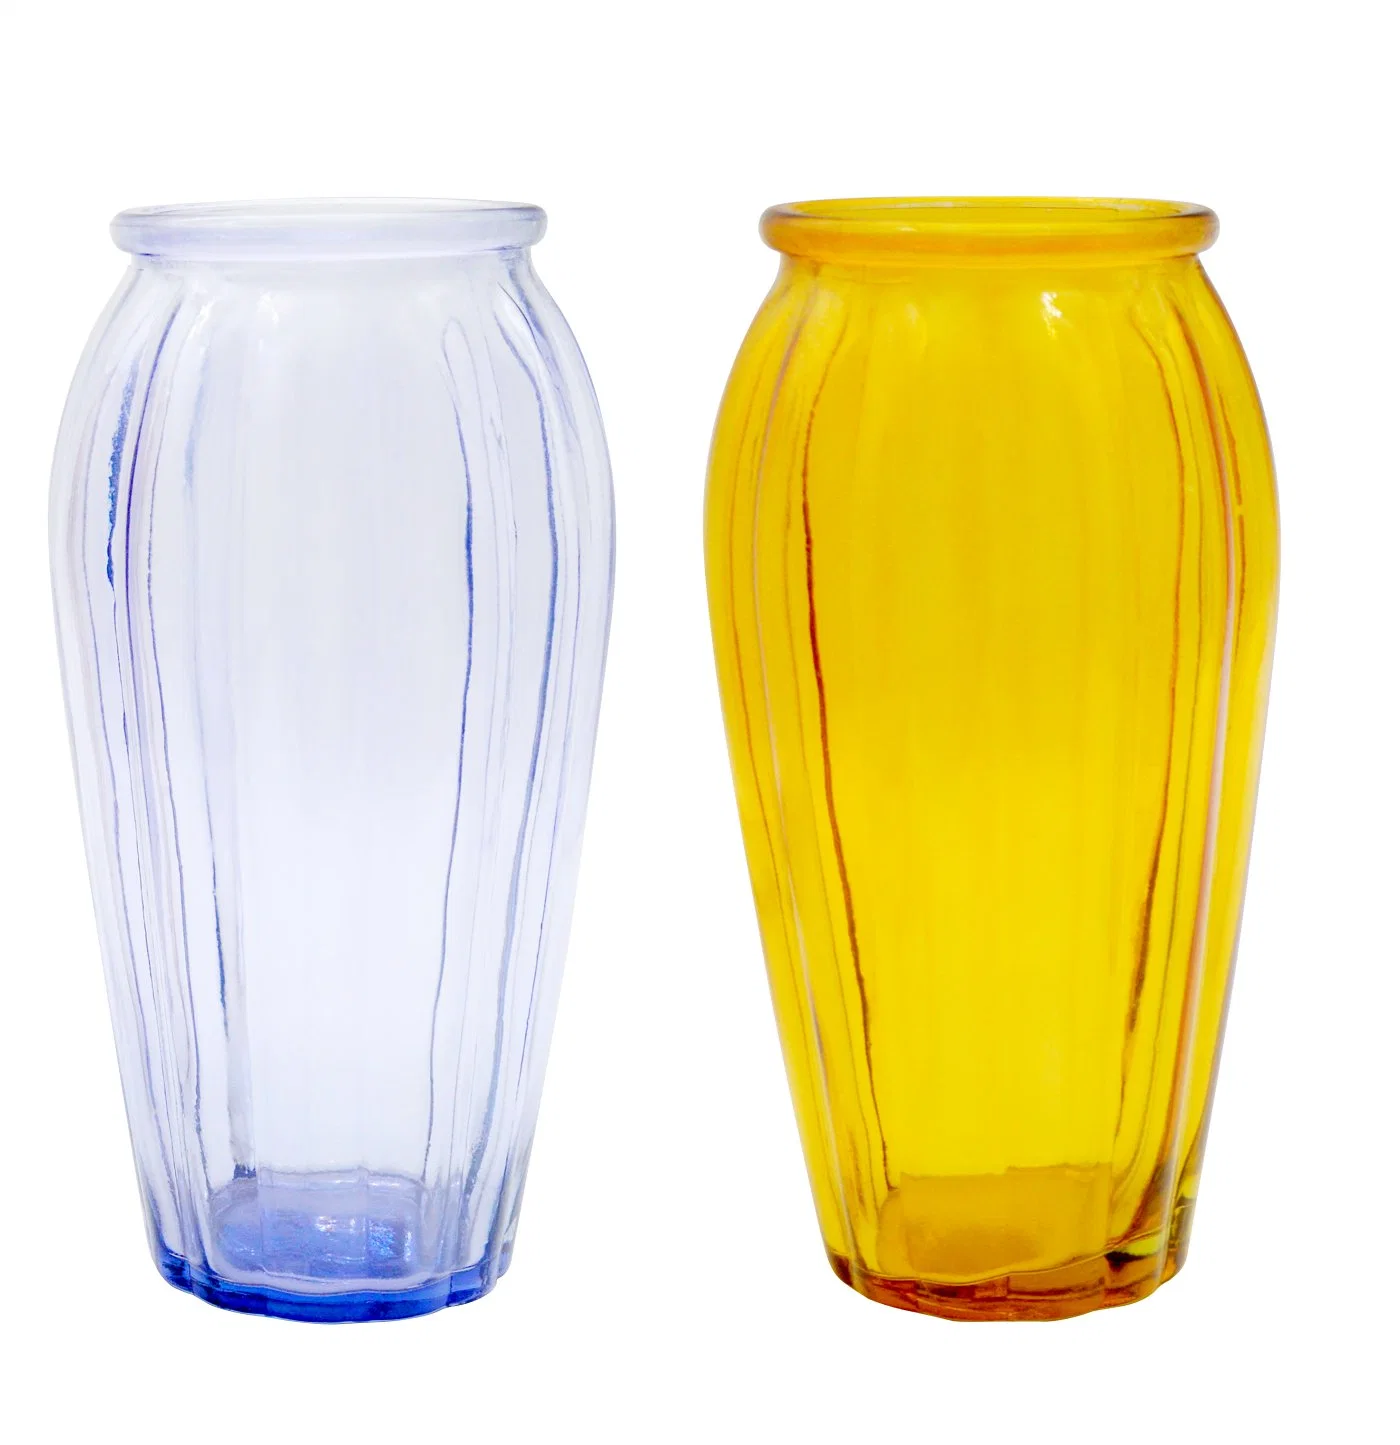 Elegant Glass Vase Colorful Transparent Diamond Cut Design Fresh and Exquisite